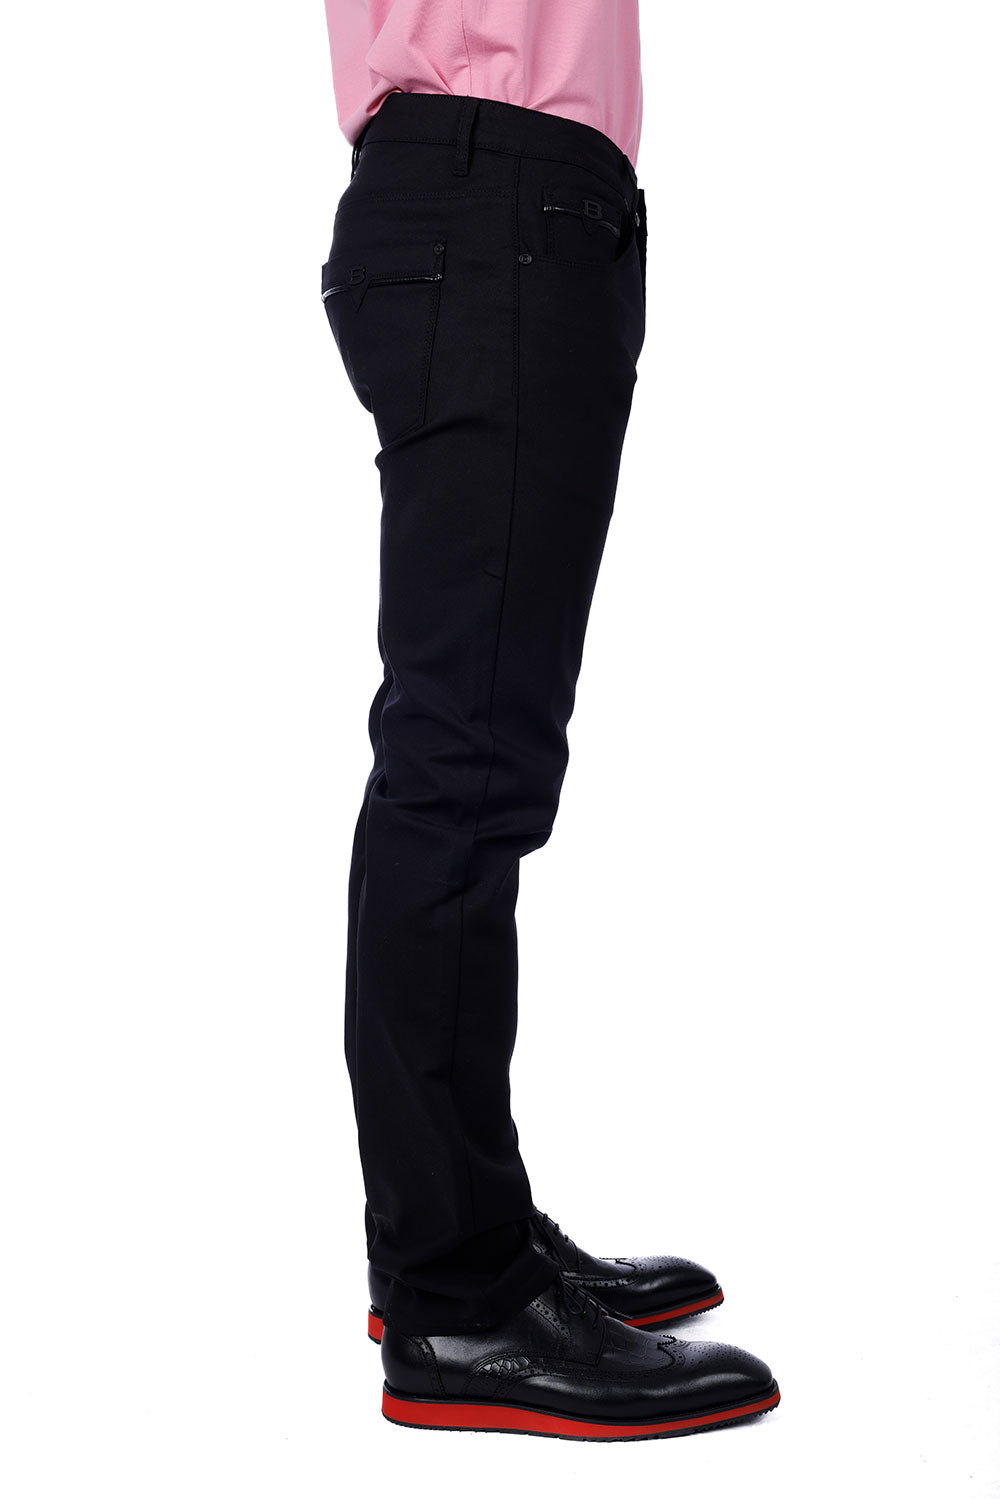 Barabas Men's Slim Fit Solid Color Plain Premium Jeans 3CPW32 Black